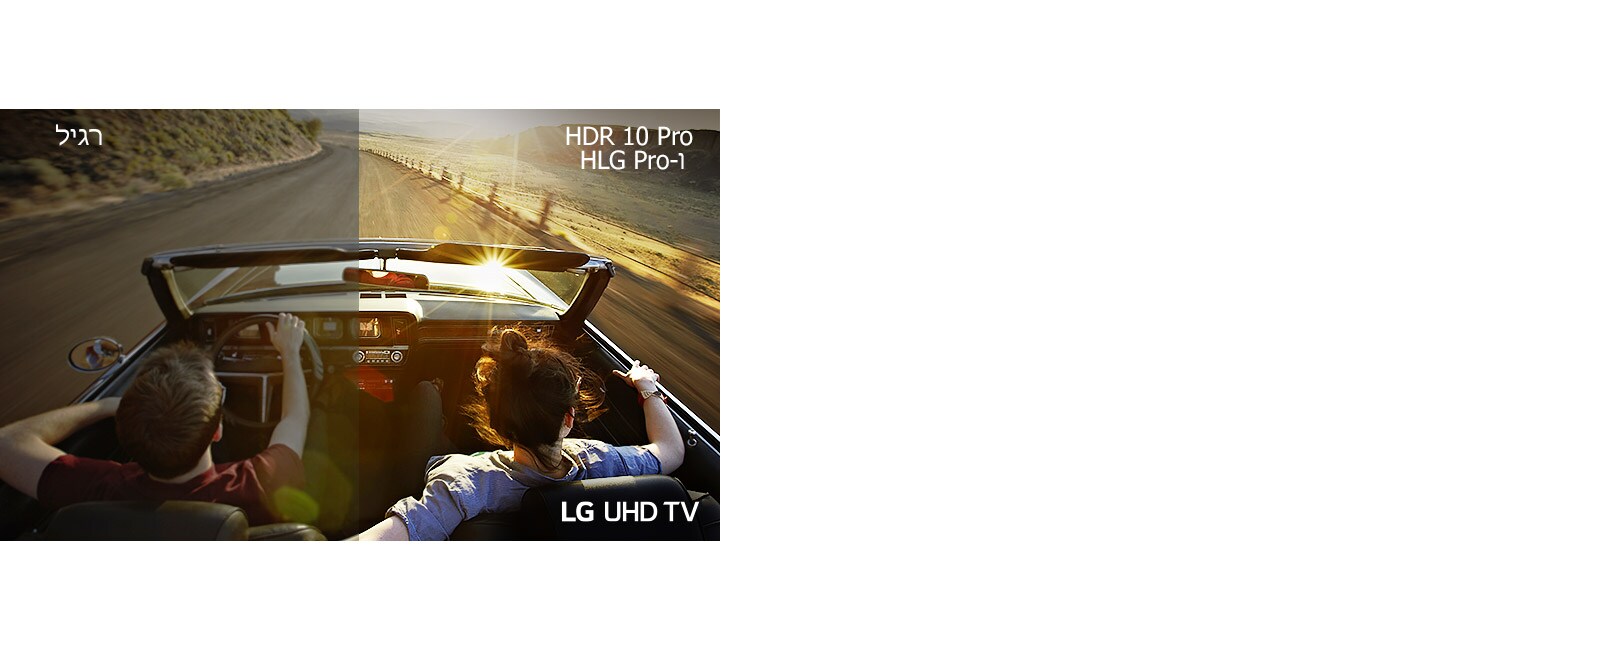 זוג ברכב הנוסע במורד הדרך. חצי מהתמונה מופק באיכות נמוכה עי מסך רגיל. החצי השני מציג תמונה חדה ותוססת המופקת עי טלוויזיית LG UHD.